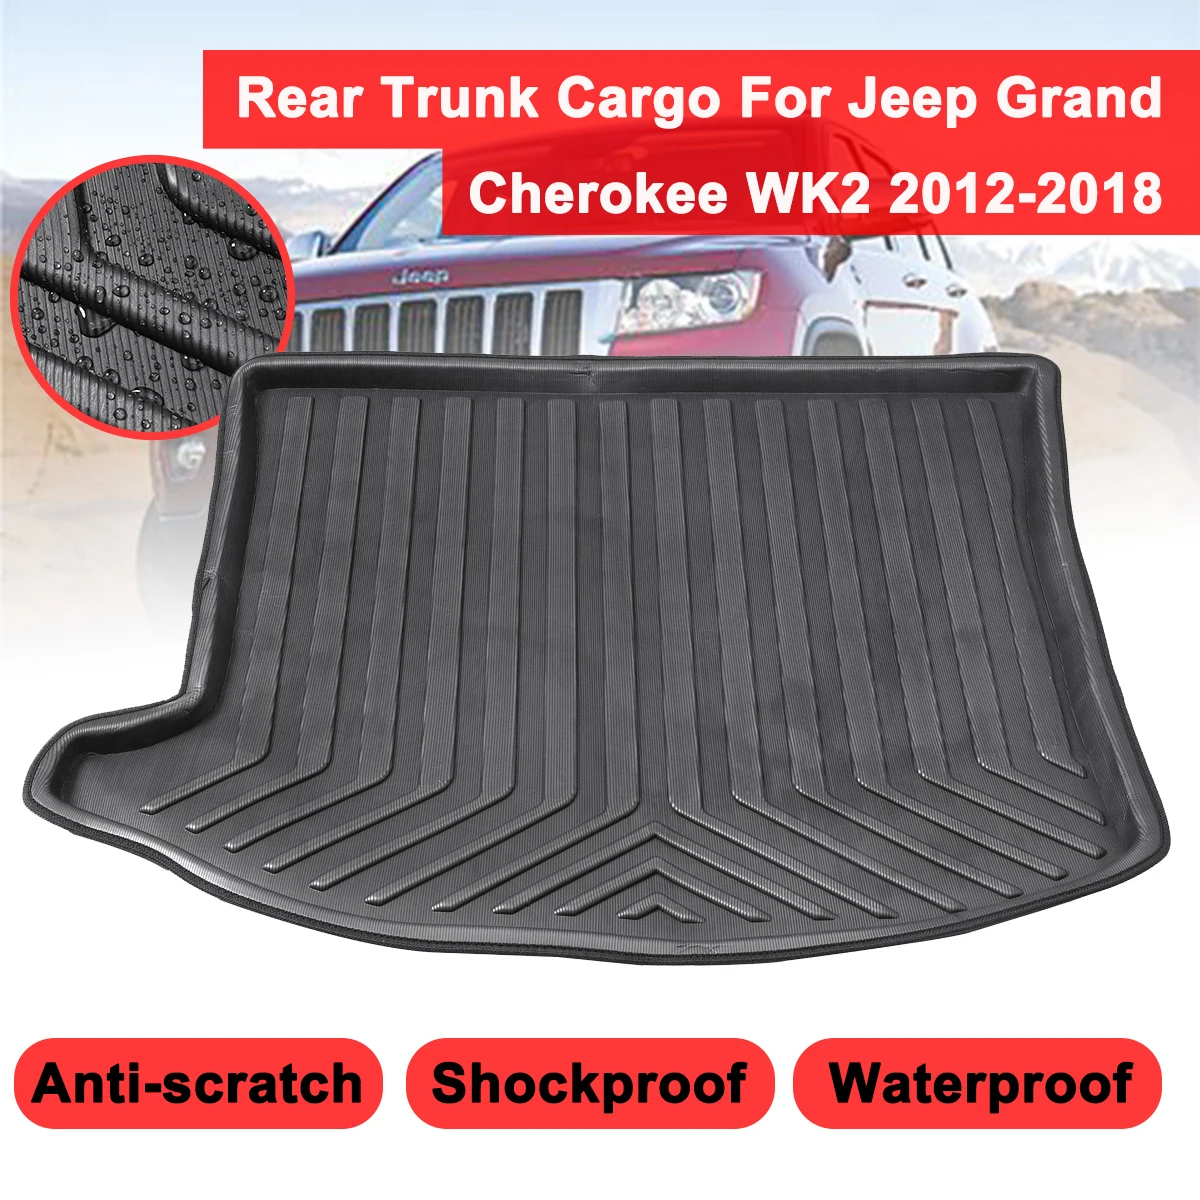 

Коврик для груза из грязи, подкладка для заднего багажника, протектор для Jeep Grand Cherokee WK2 2012 2013 2014-2018, коврик для пола